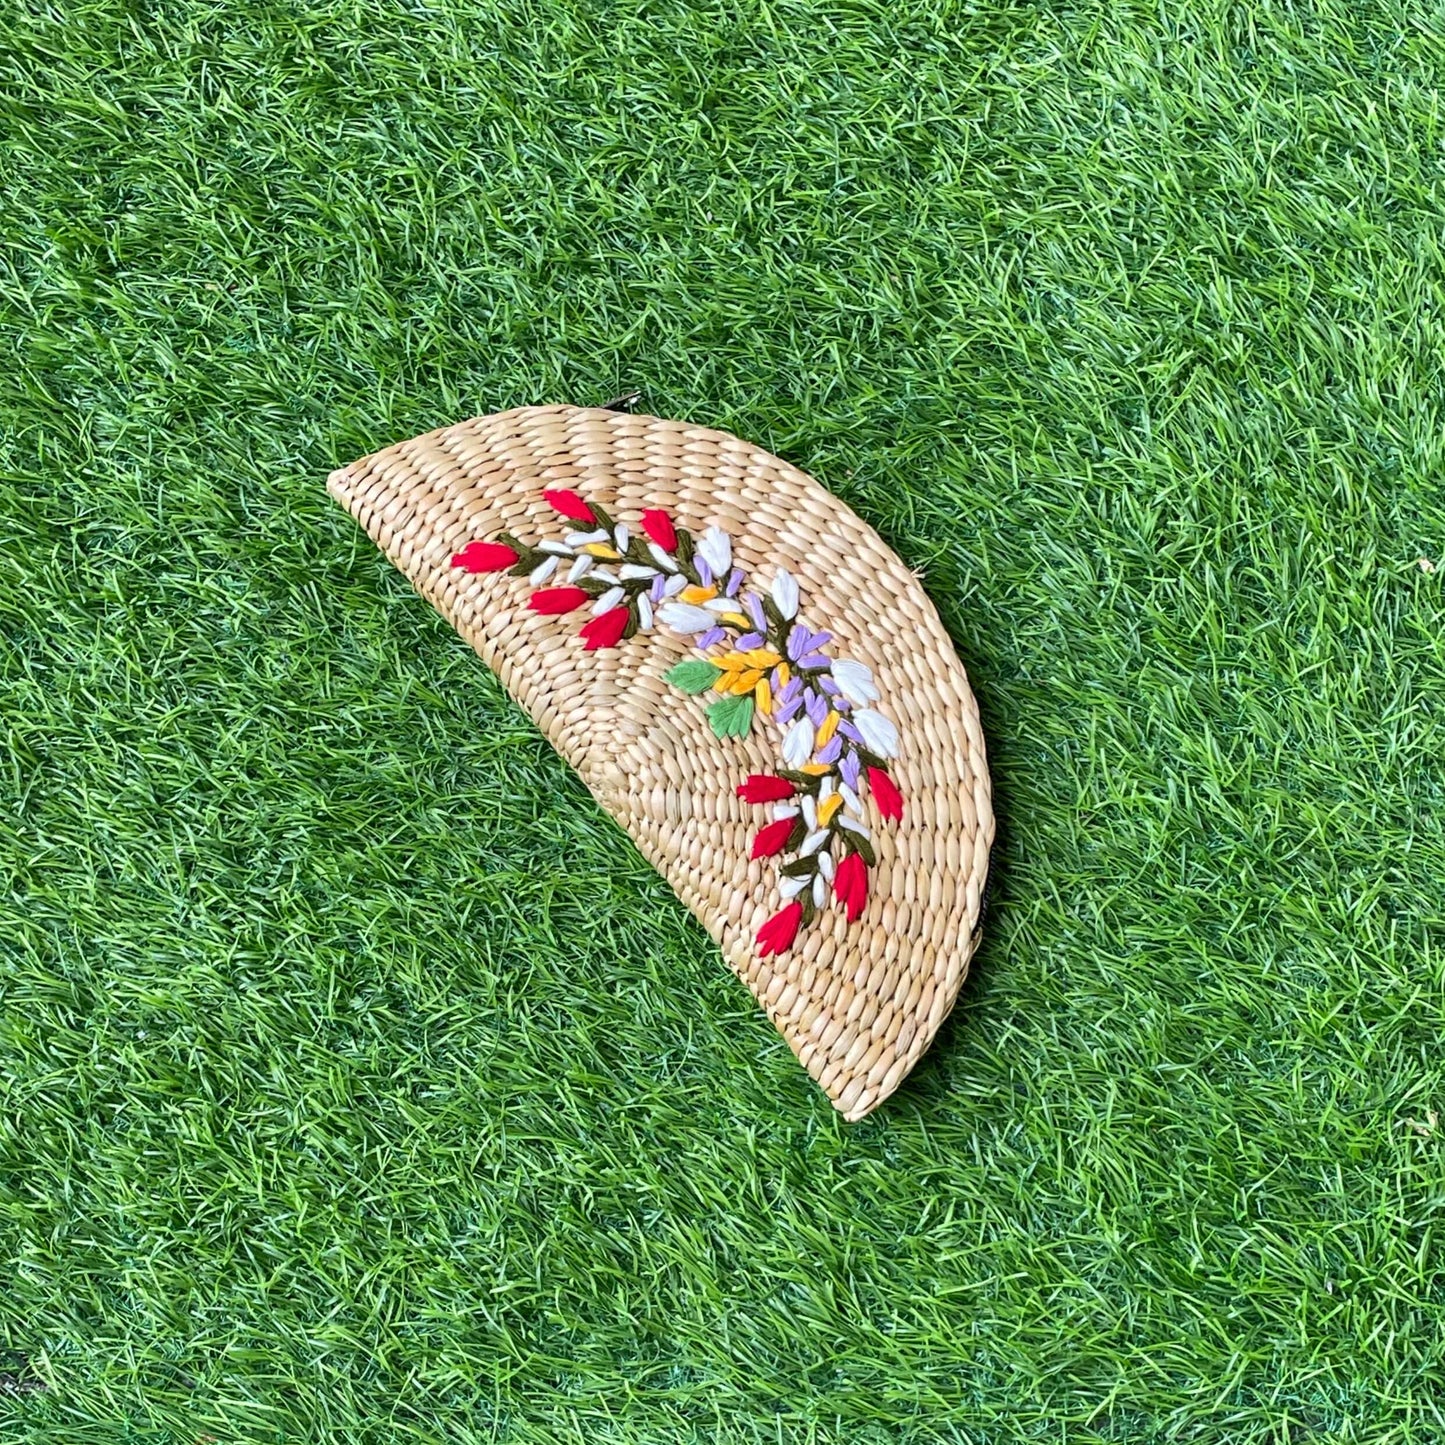 Embroidered Kouna grass Clutch